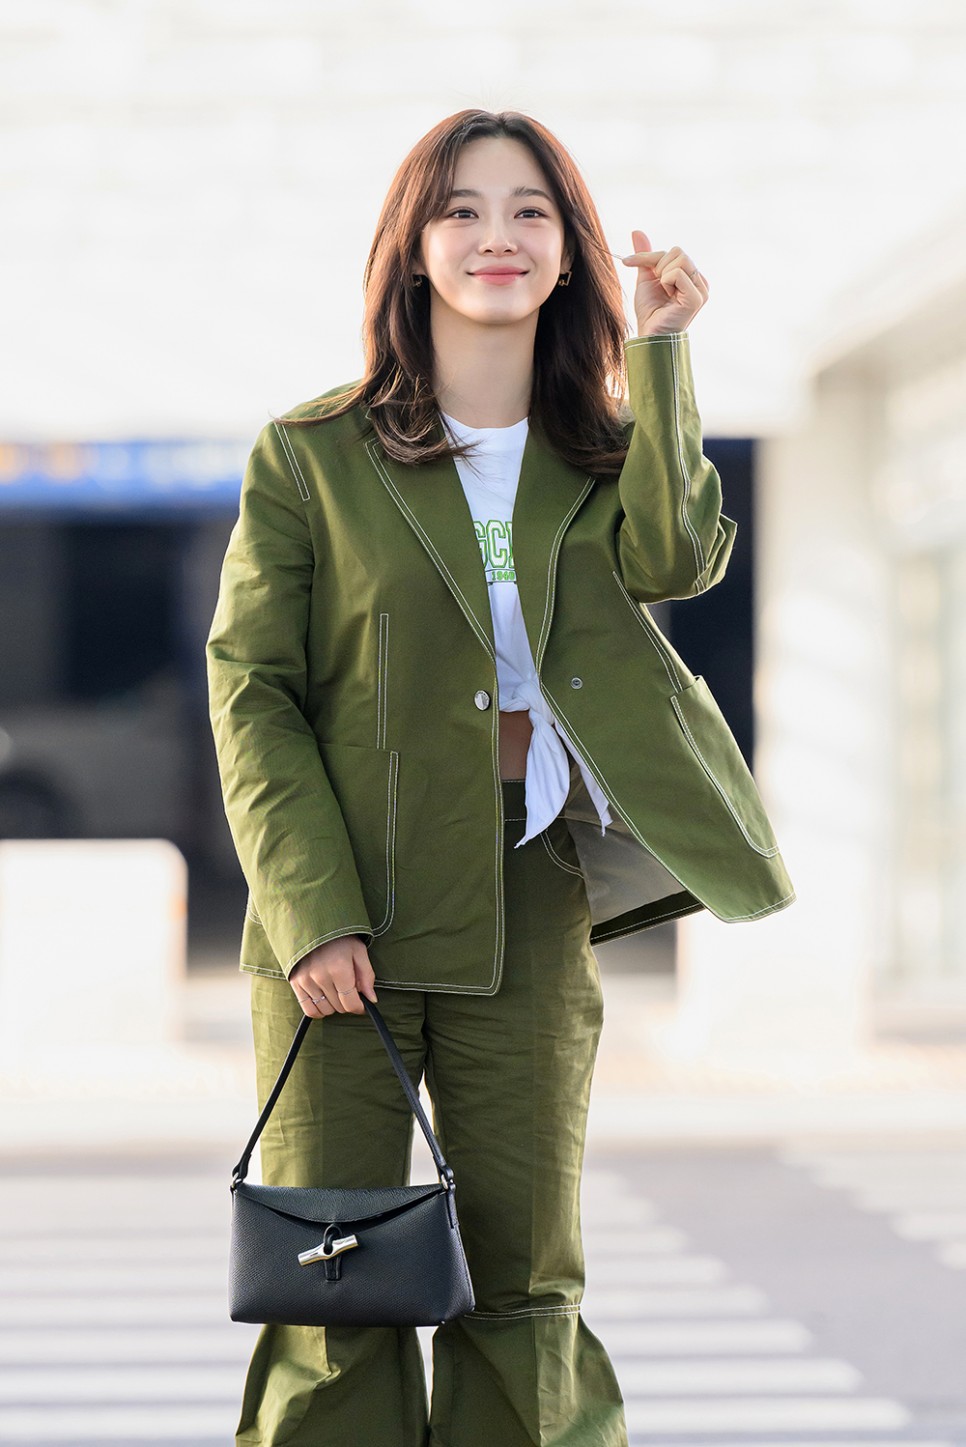 김세정 공항패션 속 가방 그리고 옷 24SS 롱샴 로조 호보백 & 여자 명품 자켓 그리고 팬츠 클로그 까지!